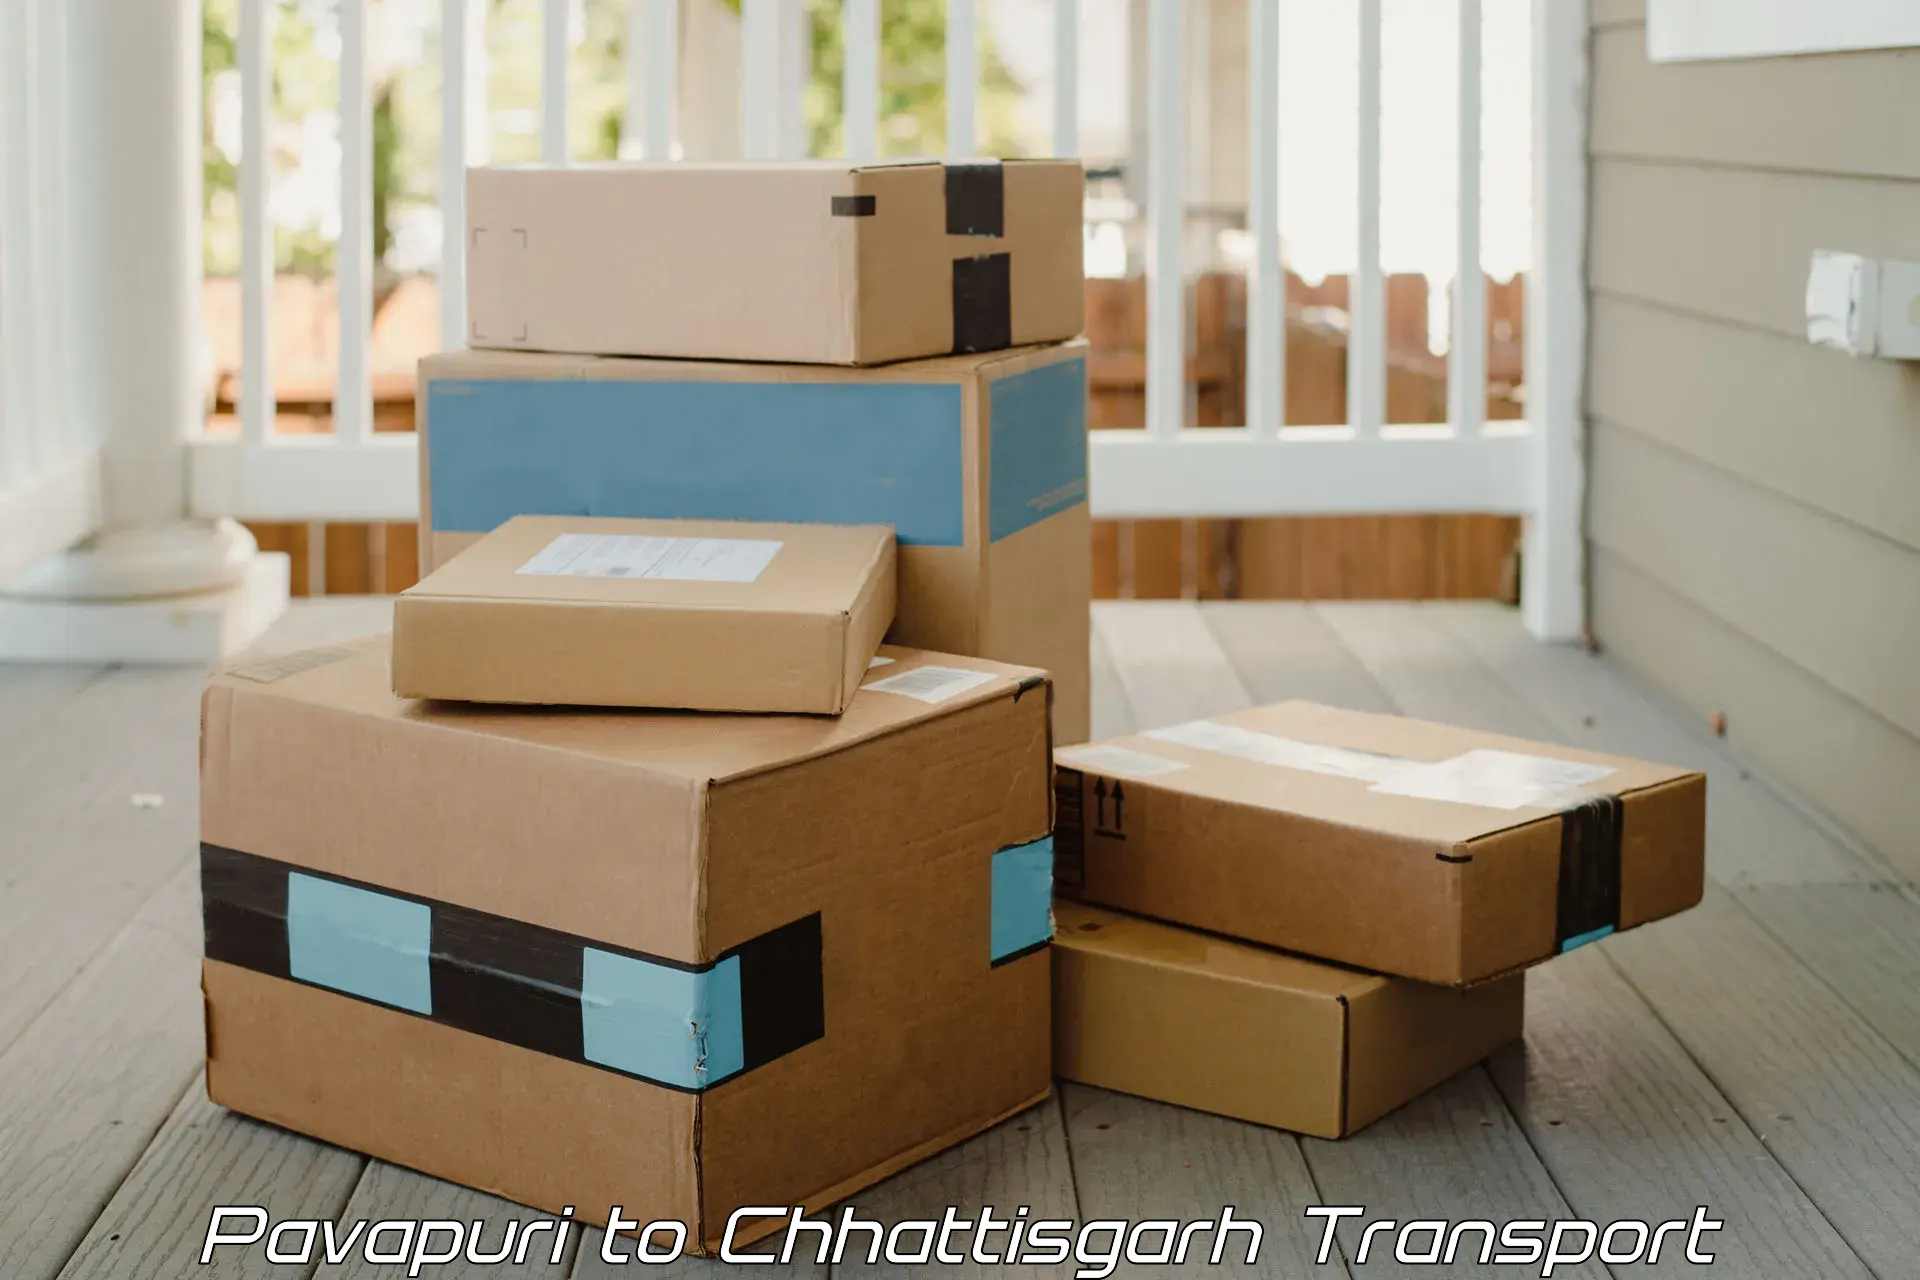 Furniture transport service Pavapuri to Pandariya